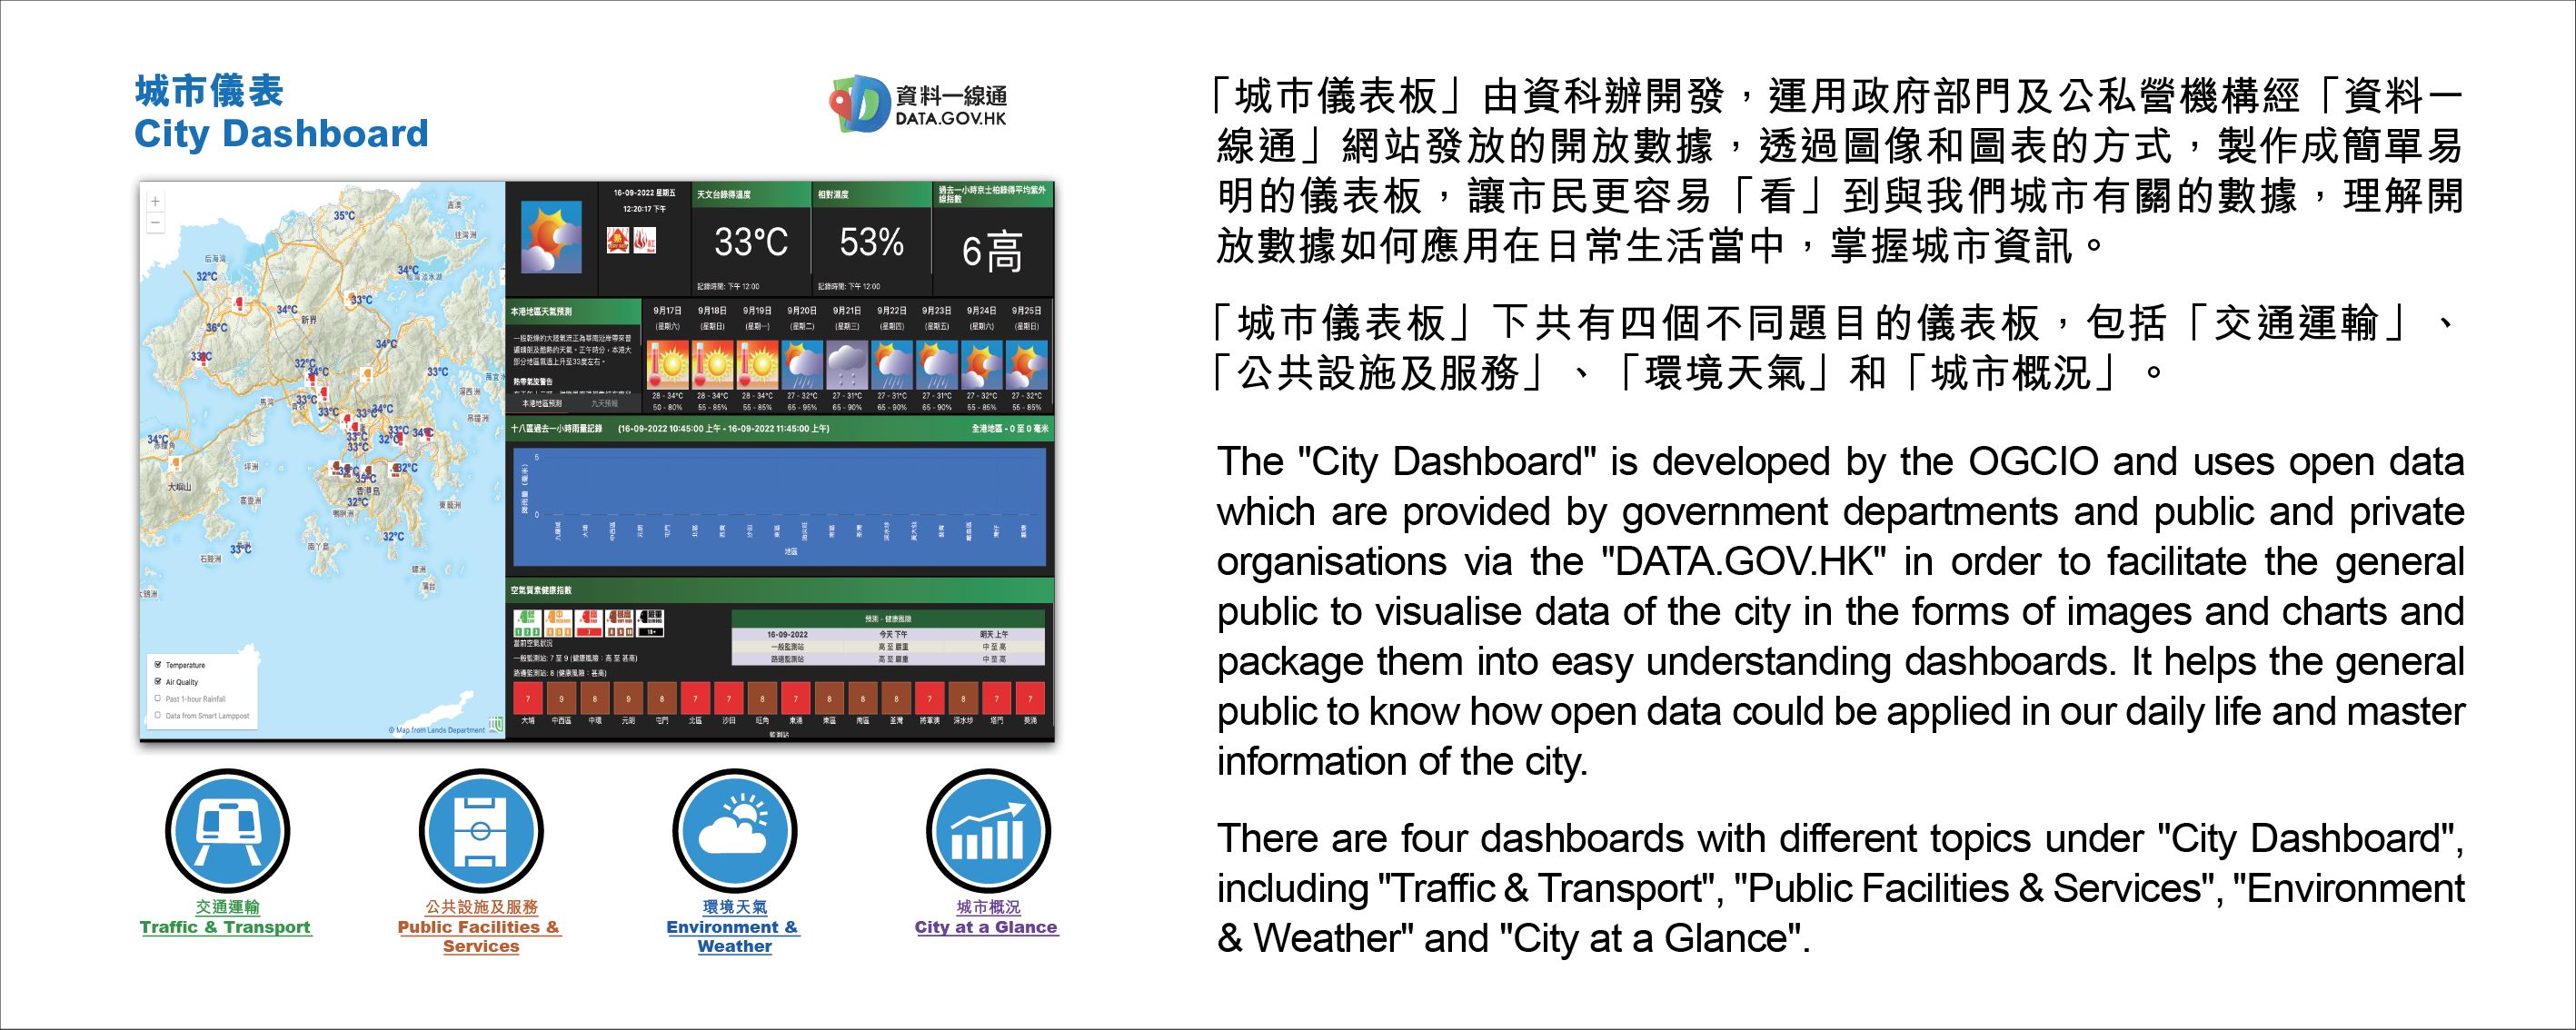 「城巿儀表板」由資科辦開發，運用政府部門及公私營機構經「資料一線通」網站發放的開放數據，透過圖像和圖表的方式，製作成簡單易明的儀表板，讓市民更容易「看」到與我們城市有關的數據，理解開放數據如何應用在日常生活當中，掌握城市資訊。「城巿儀表板」下共有四個不同題目的儀表板，包括「交通運輸」、「公共設施及服務」、「環境天氣」和「城市概況」。